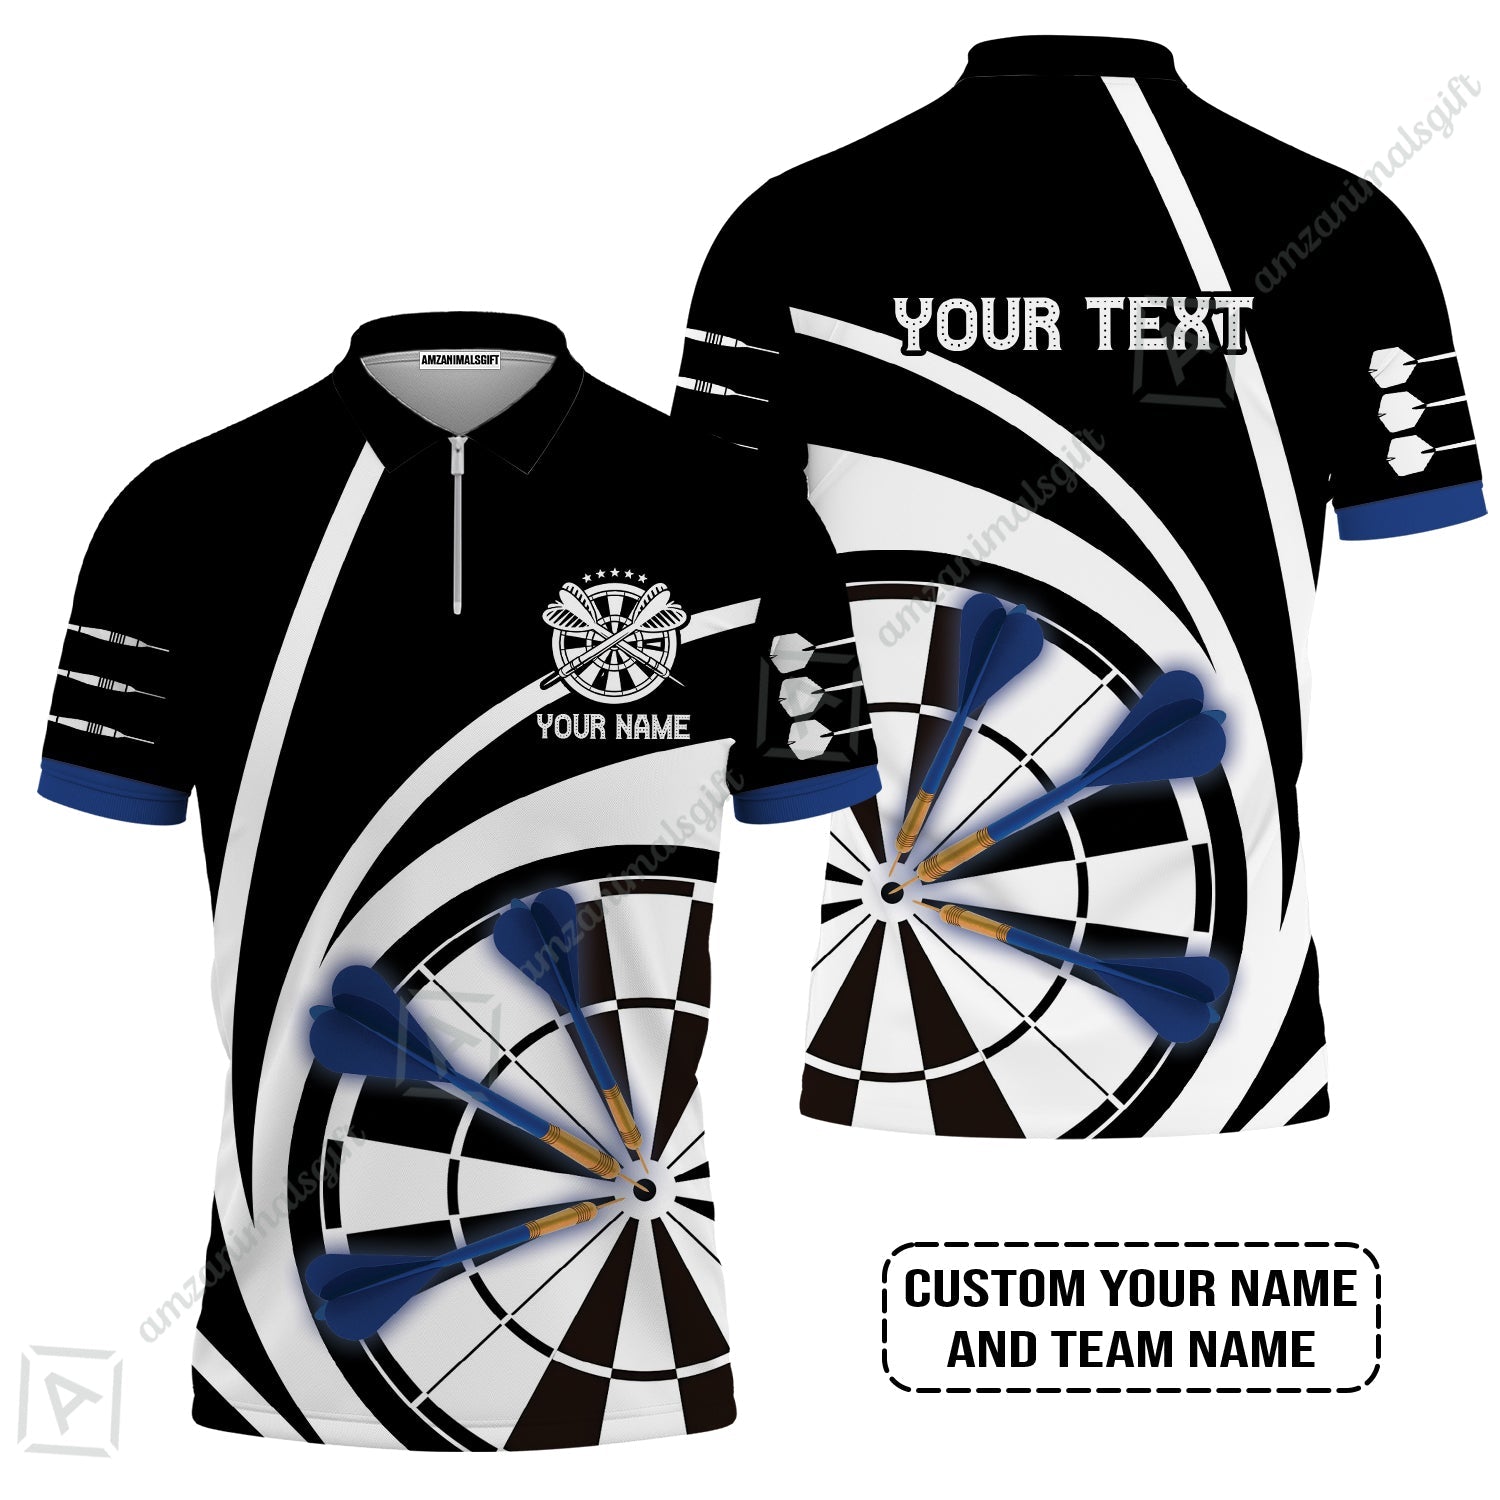 Customized Name & Text Darts Zip Polo Shirt, Personalized Name Blue Dark Darts Team Zip Polo Shirt